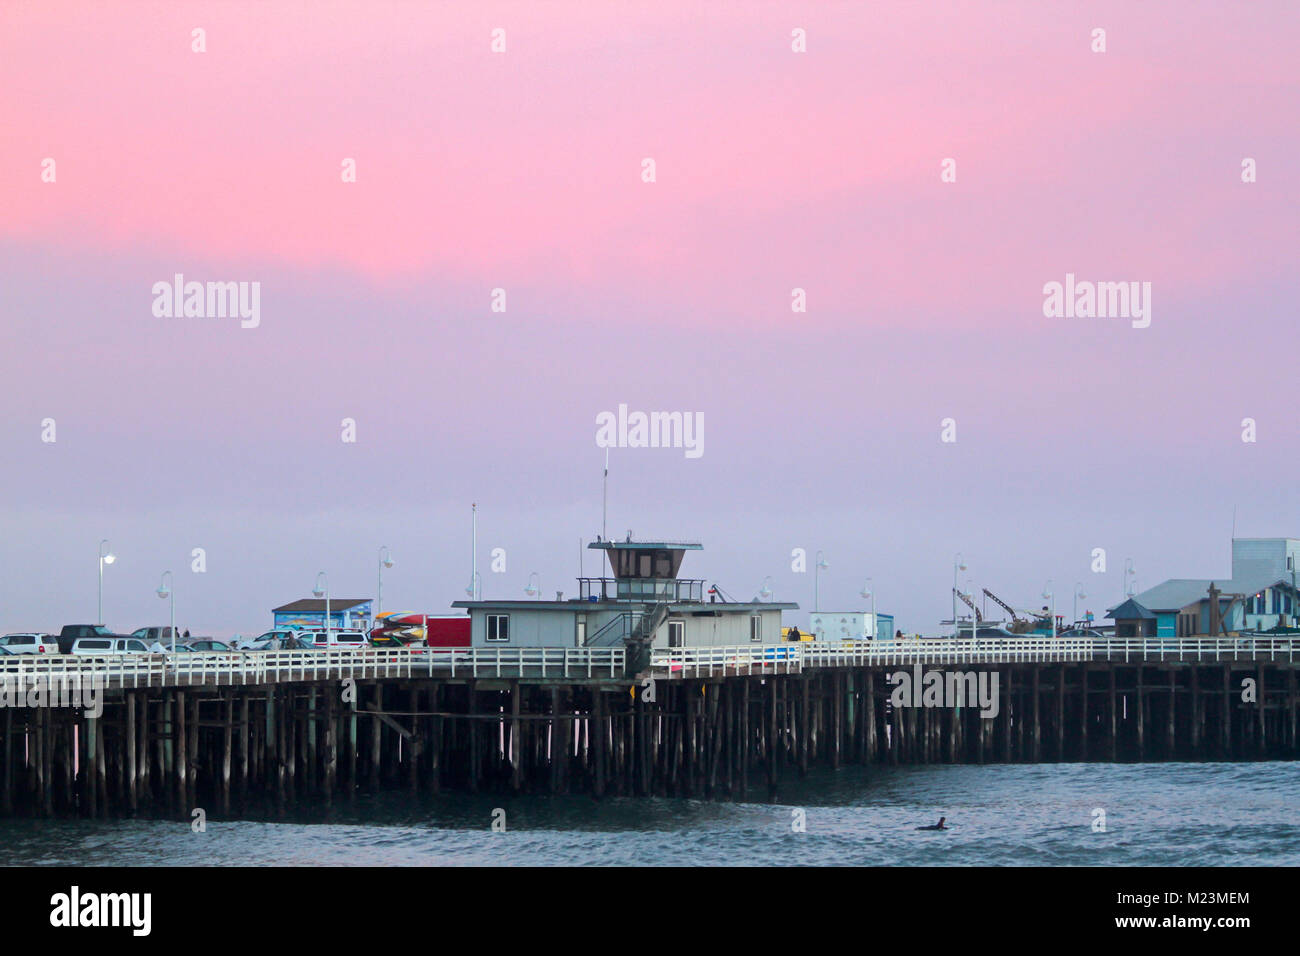 Santa Cruz Wharf at sunset, Santa Cruz, California, United States Stock Photo